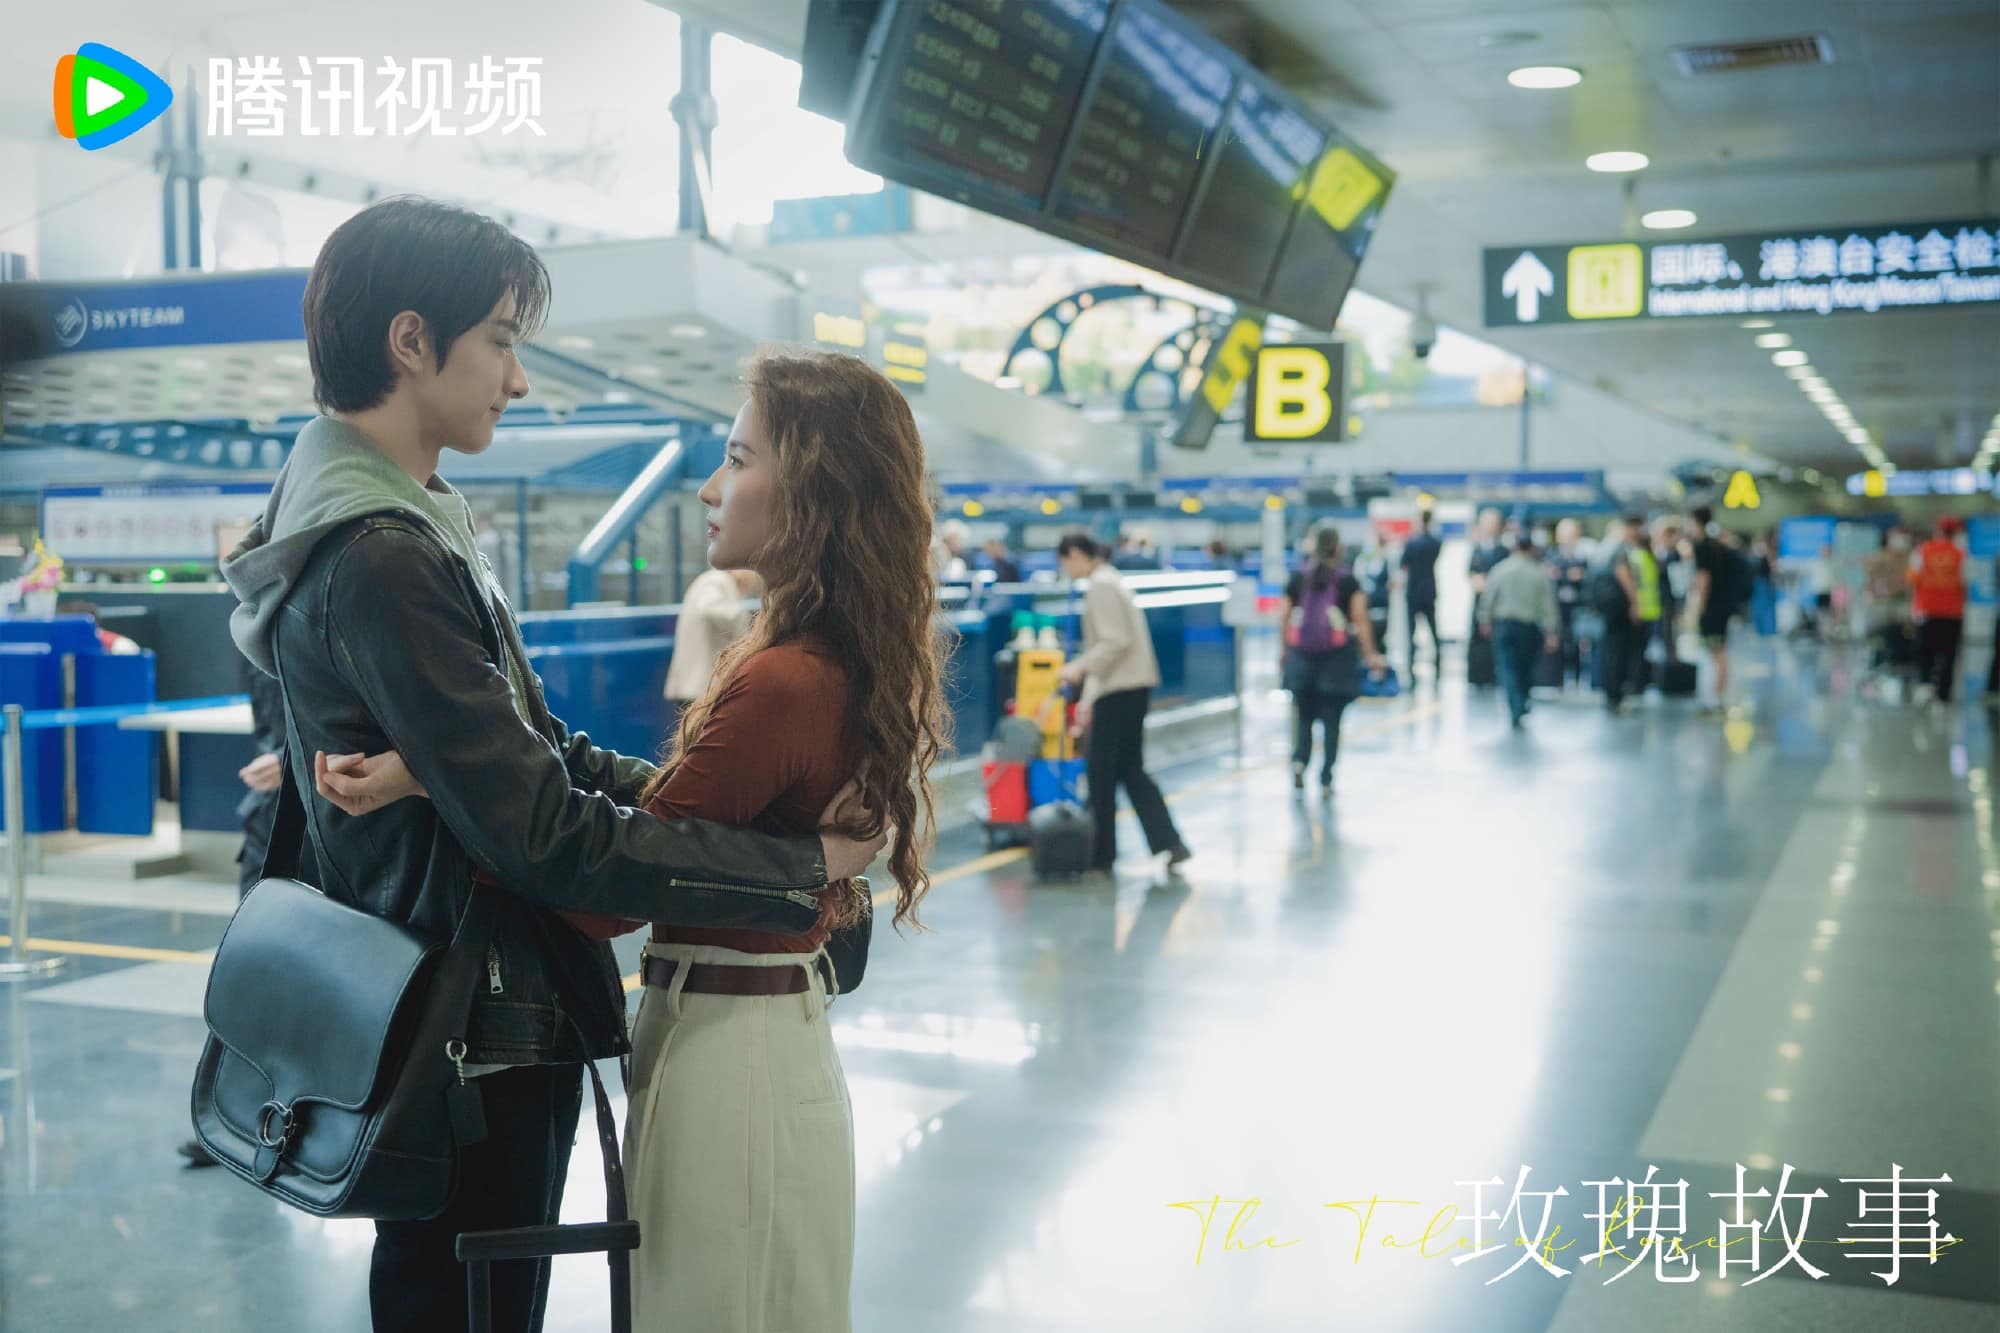 Câu Chuyện Hoa Hồng của Lưu Diệc Phi tung poster các nhân vật, hé lộ mối quan hệ phức tạp của nữ chính với các nam chính trong phim - Ảnh 11